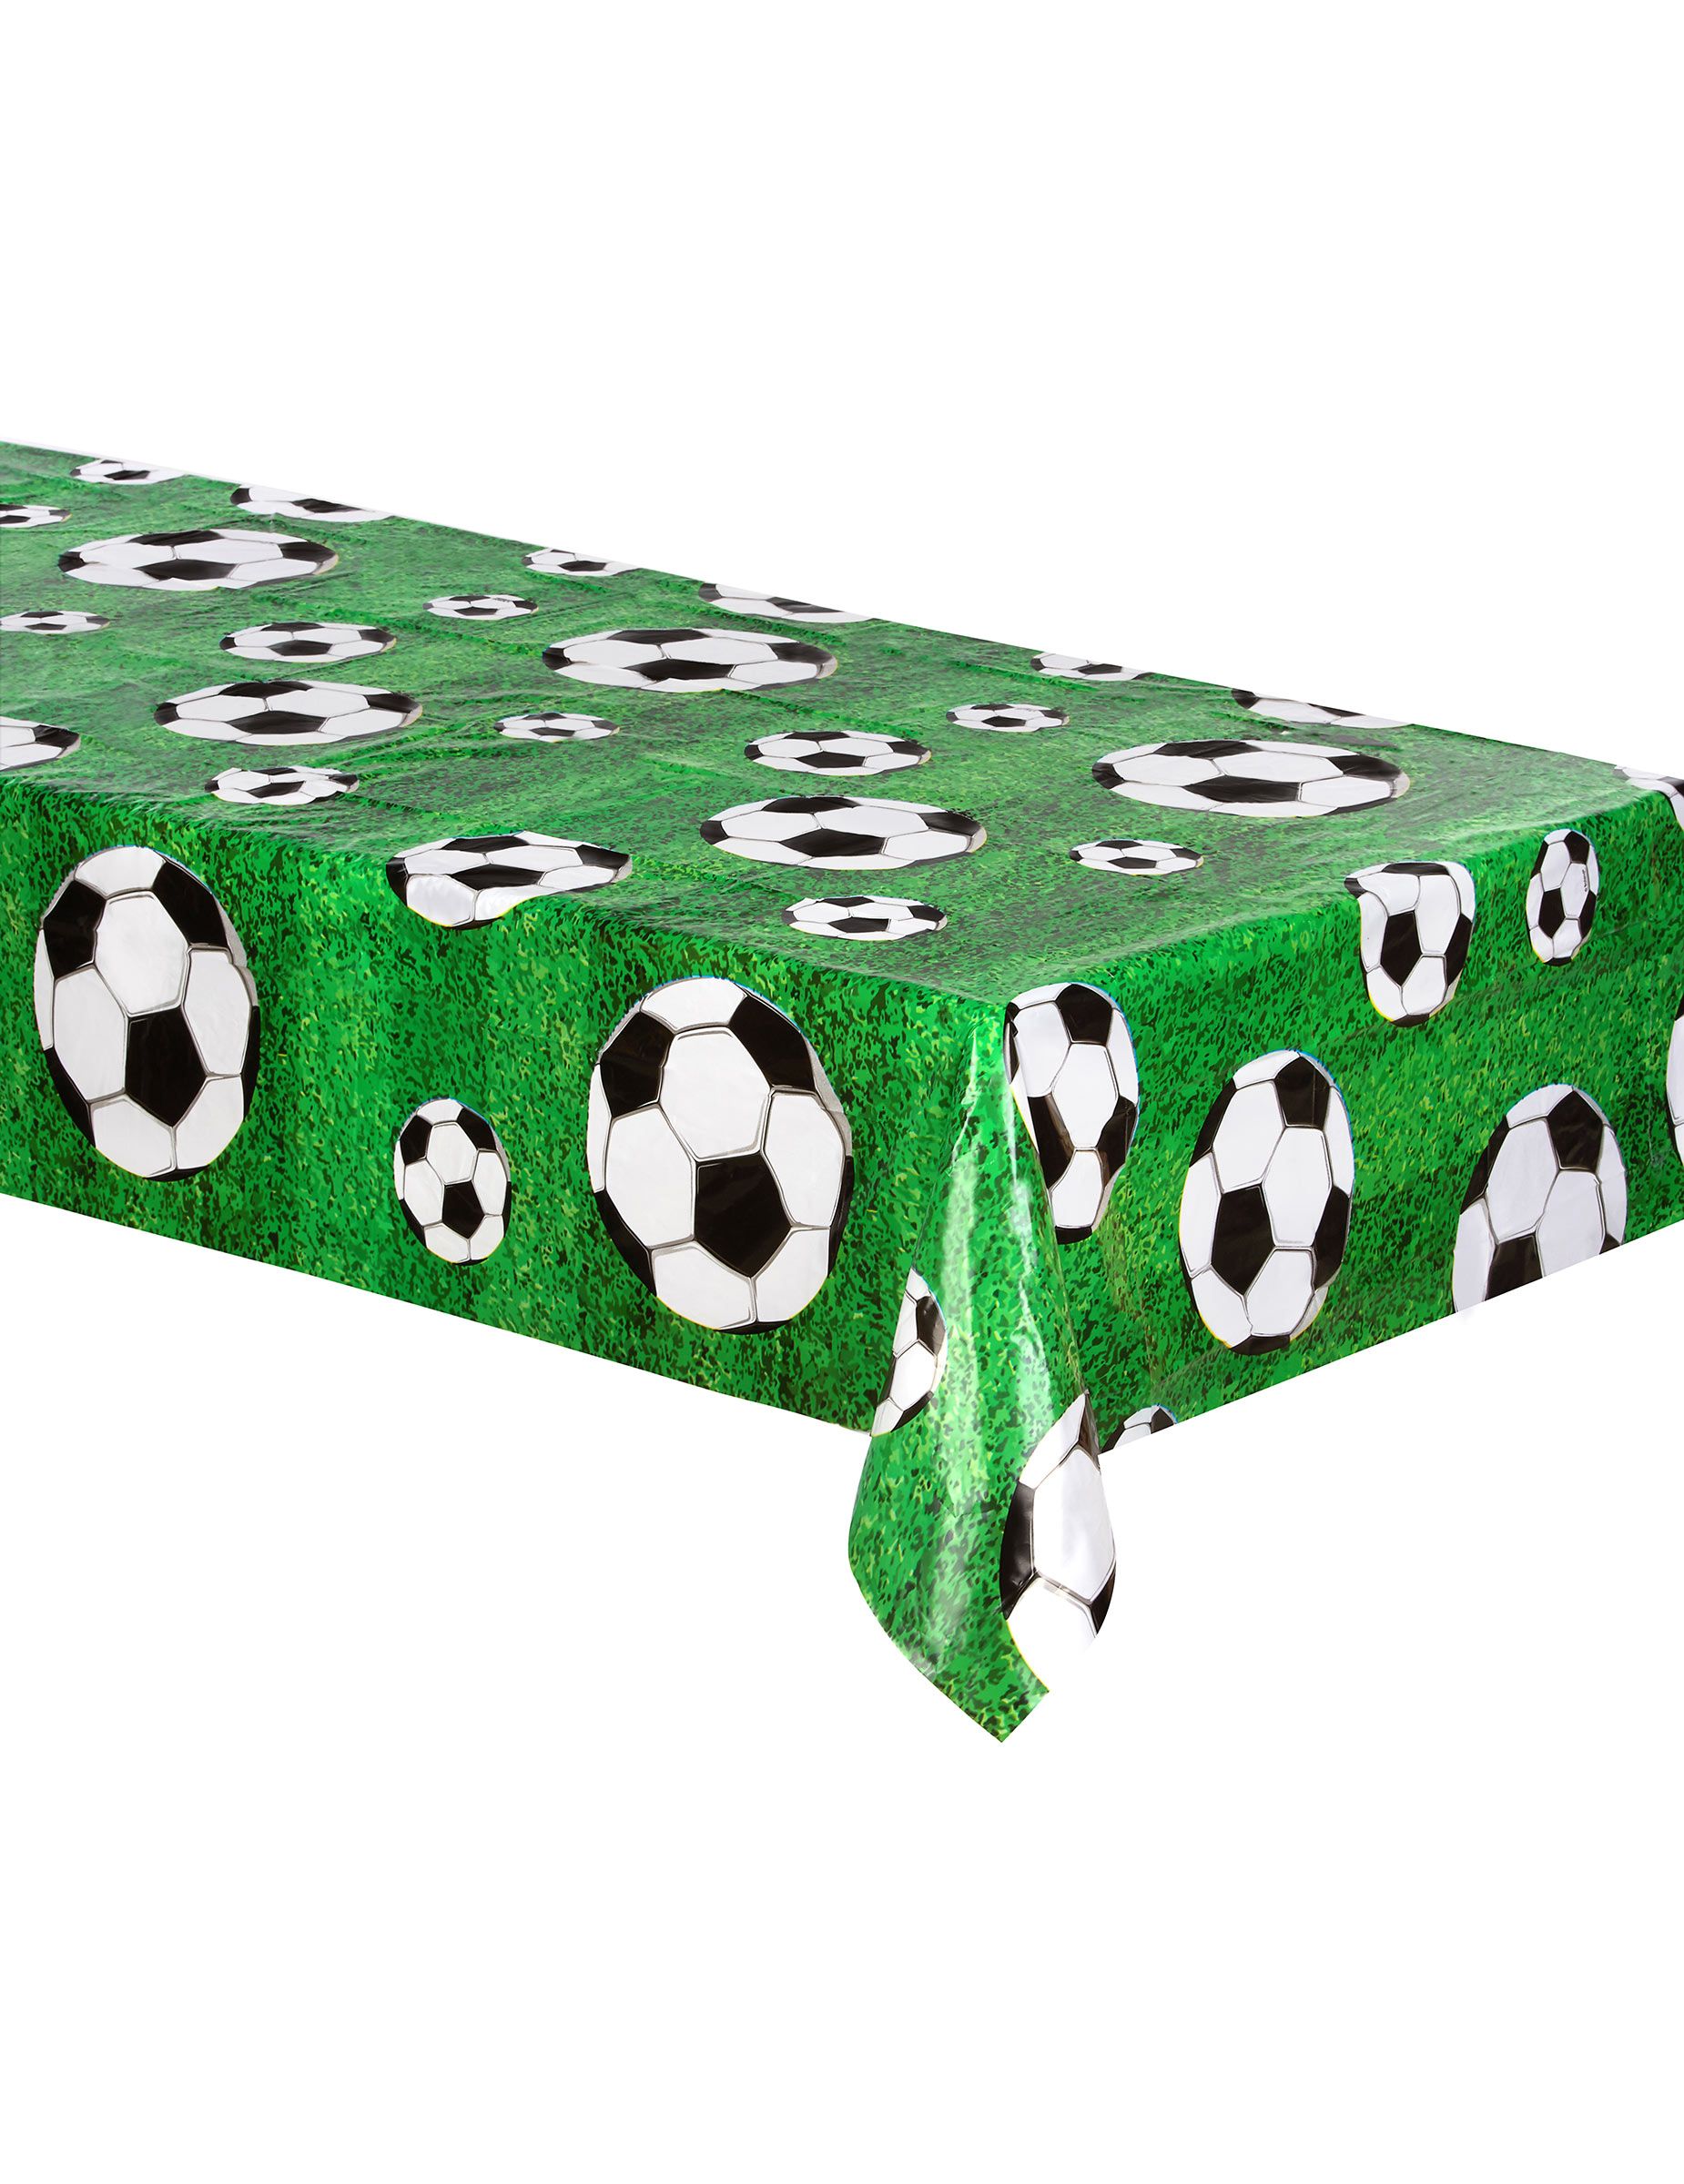 Fußball-Tischdecke Partydeko grün-weiss-schwarz 120 x 180cm von BOLAND BV